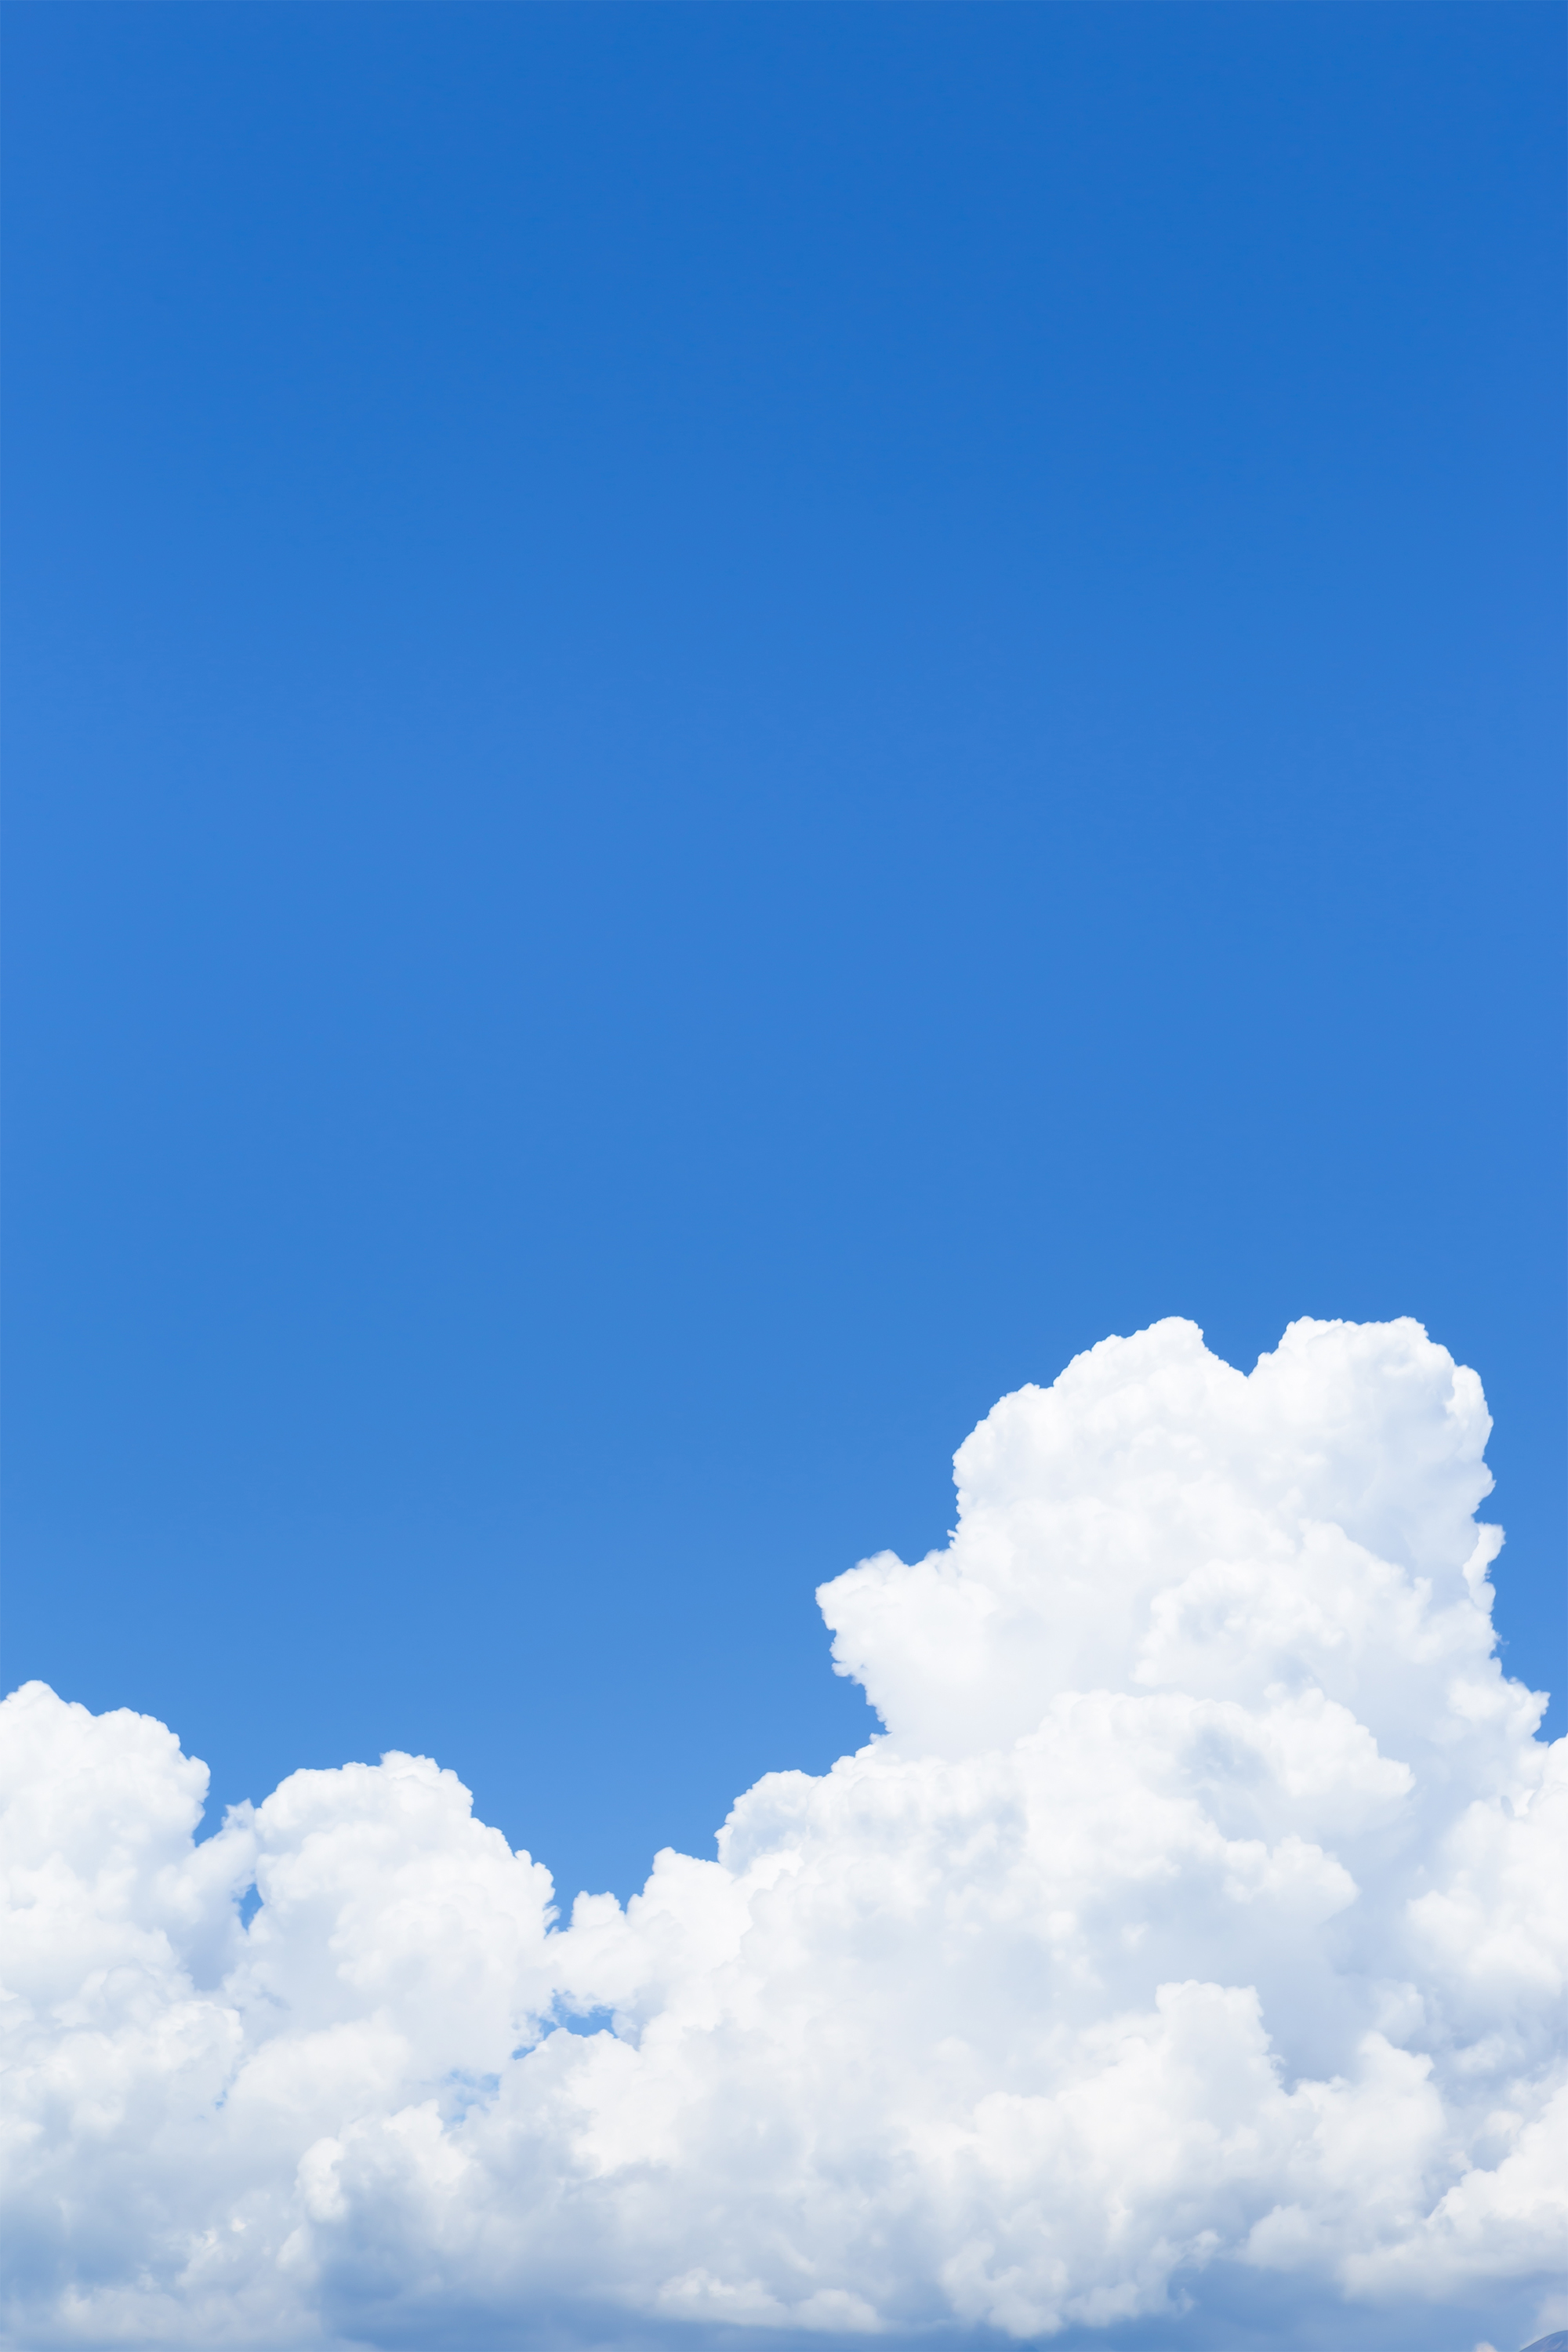 真夏の入道雲02 無料の高画質フリー写真素材 イメージズラボ